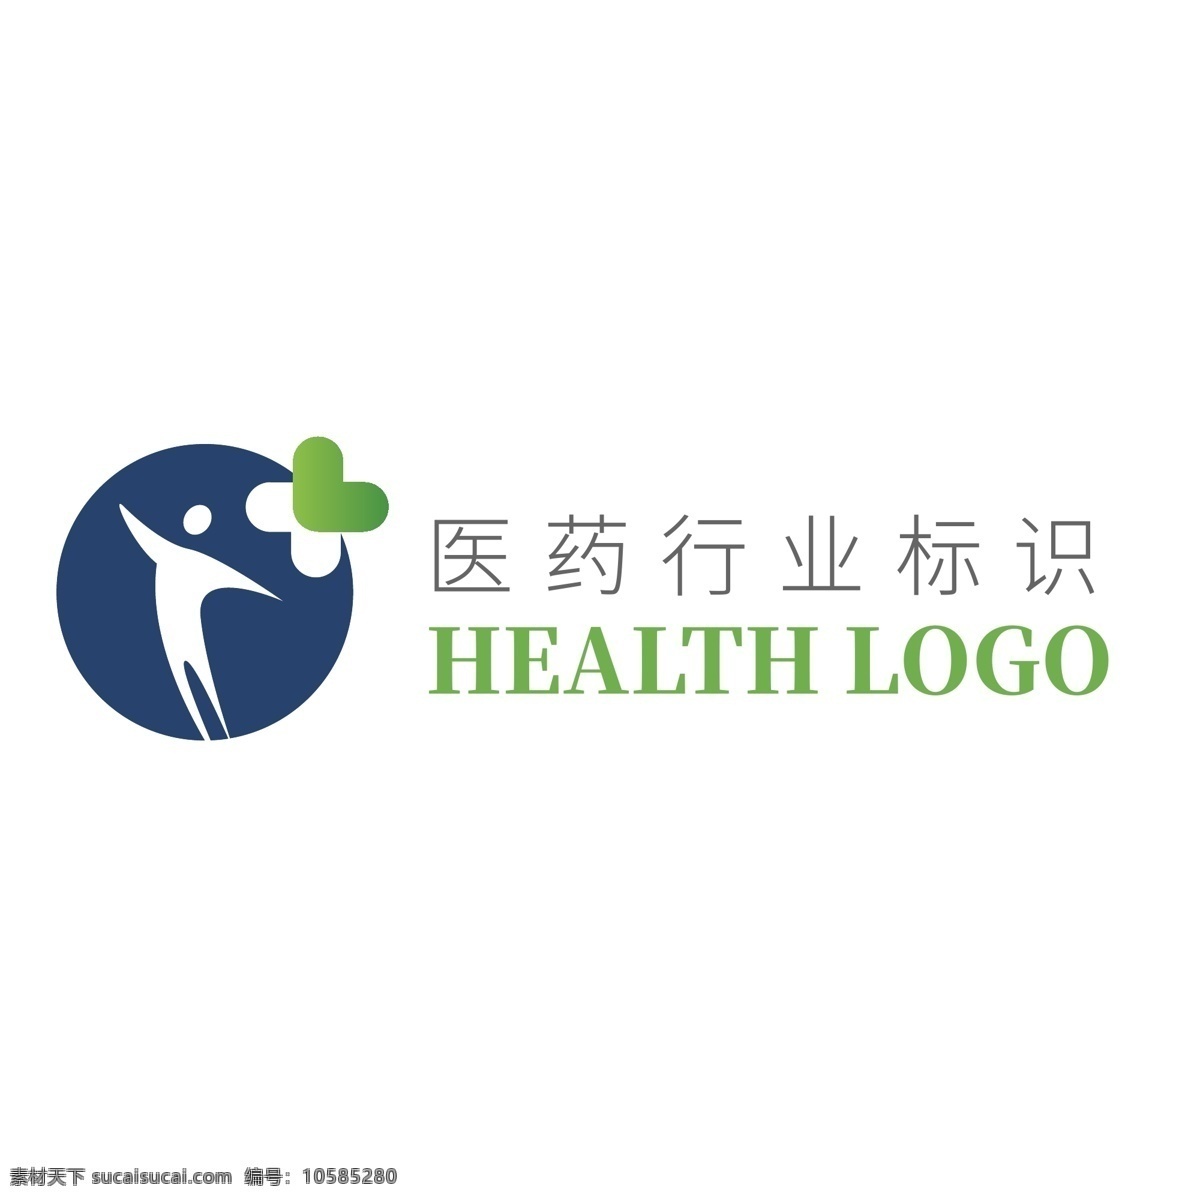 蓝色 医药卫生 健康 行业 logo 模板 医药 卫生 企业